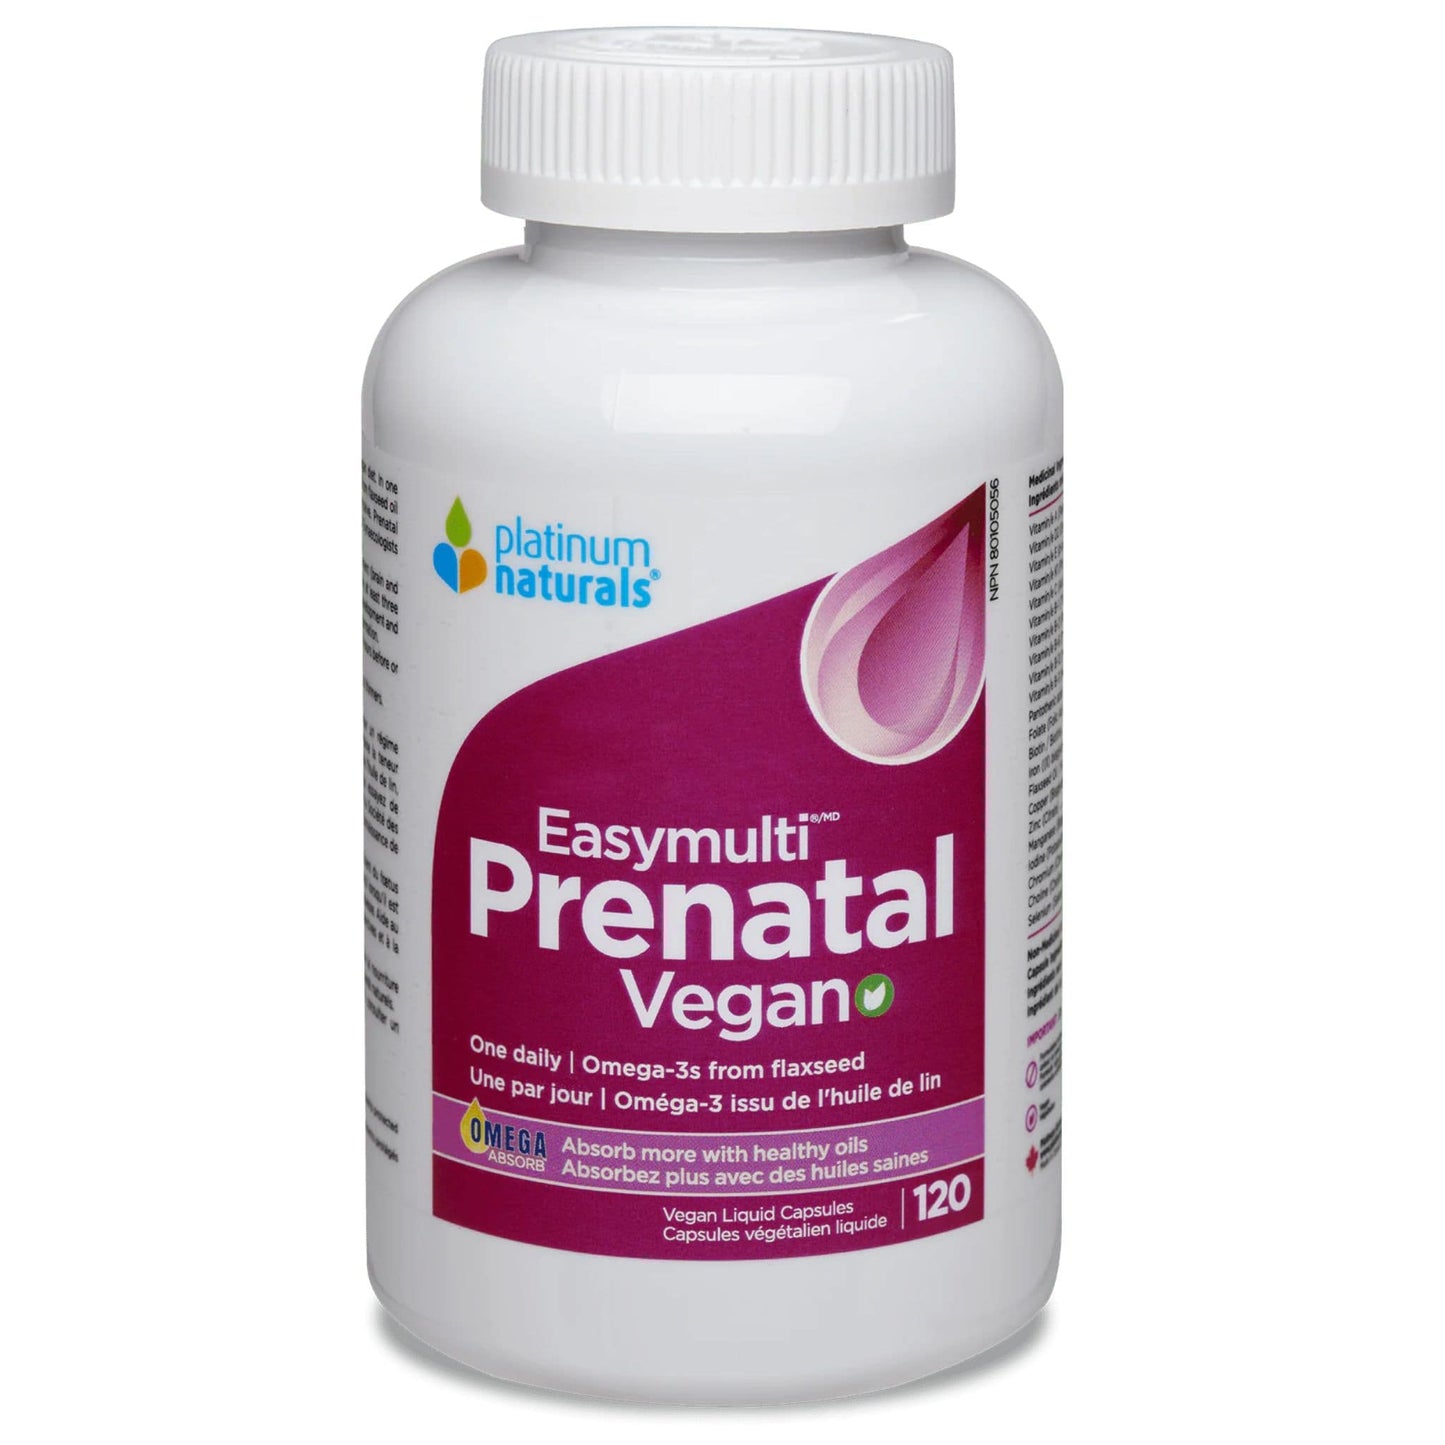 120 Vegan Liquid Capsules | Platinum Naturals Easymulti Prenatal Vegan